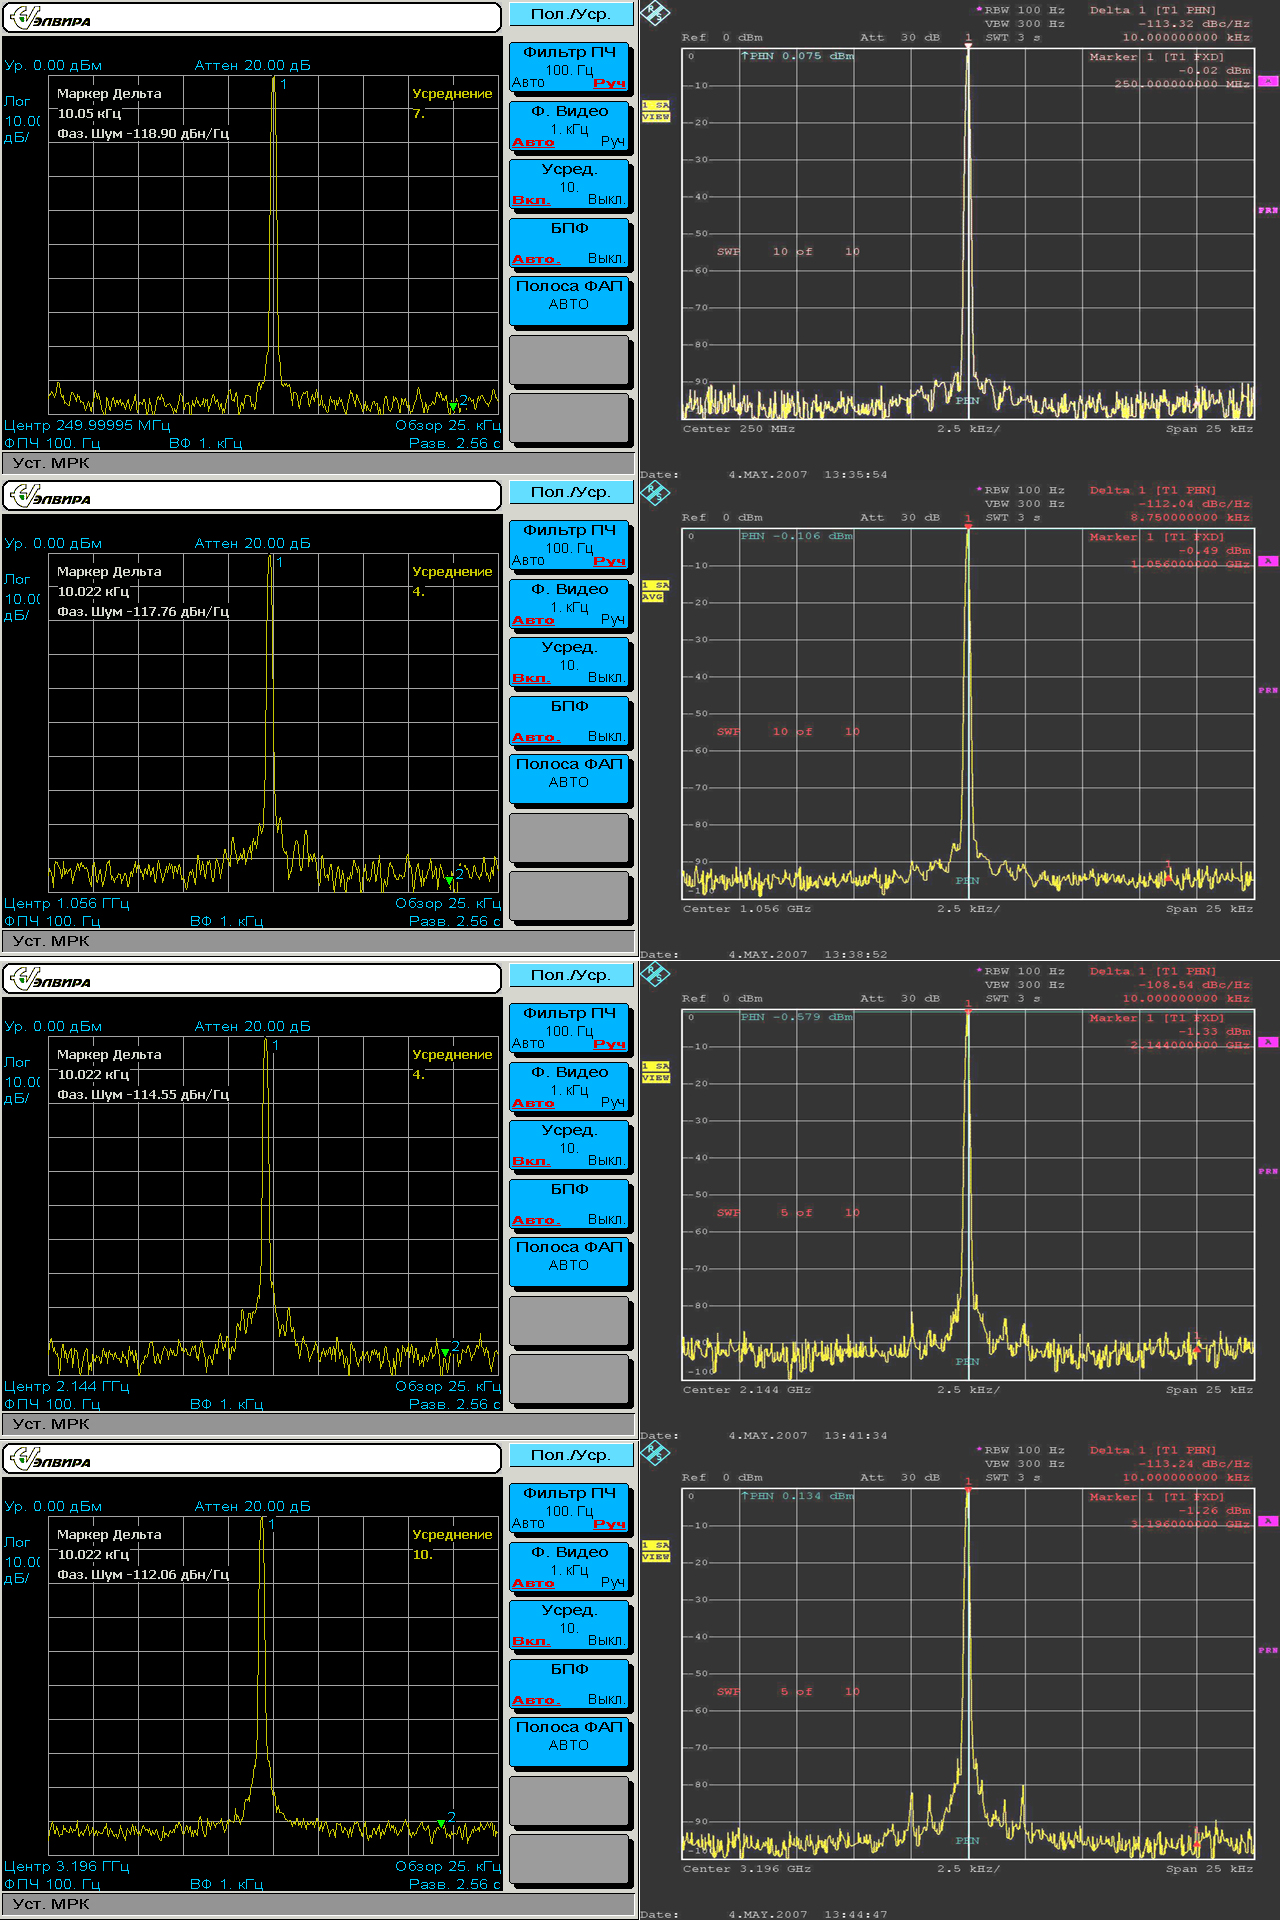 Cравнение фазовых шумов СК4-БЕЛАН 32 с опцией 003 с фазовыми шумами конкурентного прибора Rohde & Schwarz FSP7 на частотах 250МГц, 1056МГц, 2144МГц и 3196МГц.